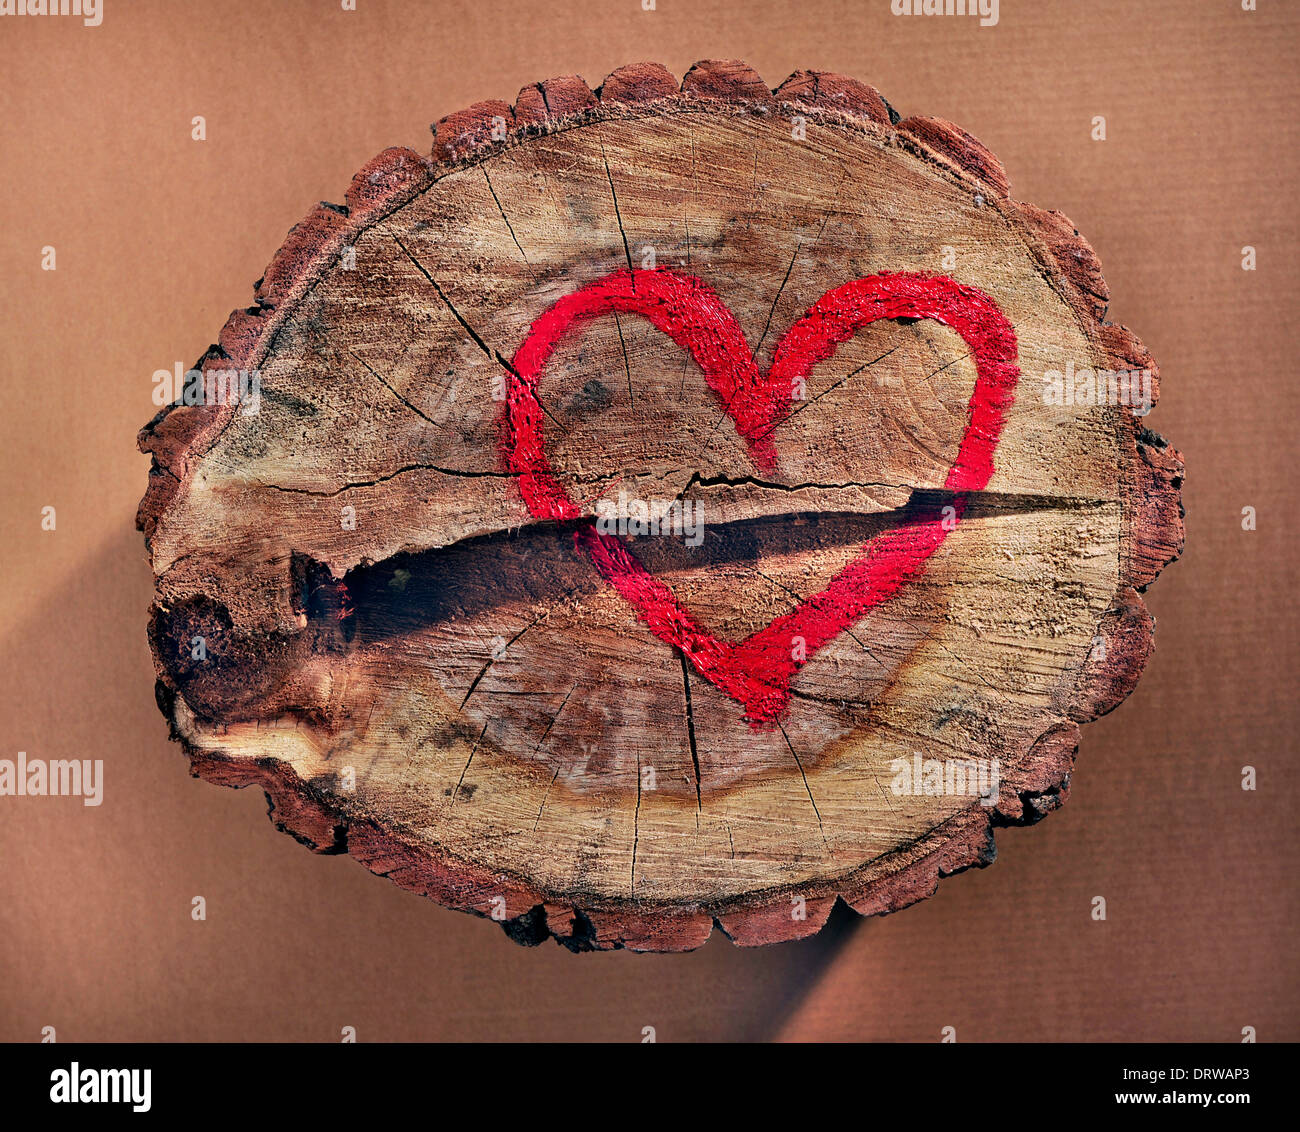 Amore e salvare la natura, cuore rosso disegnato su un tronco di albero. Contribuire a proteggere la natura, stop deforestations. Foto Stock